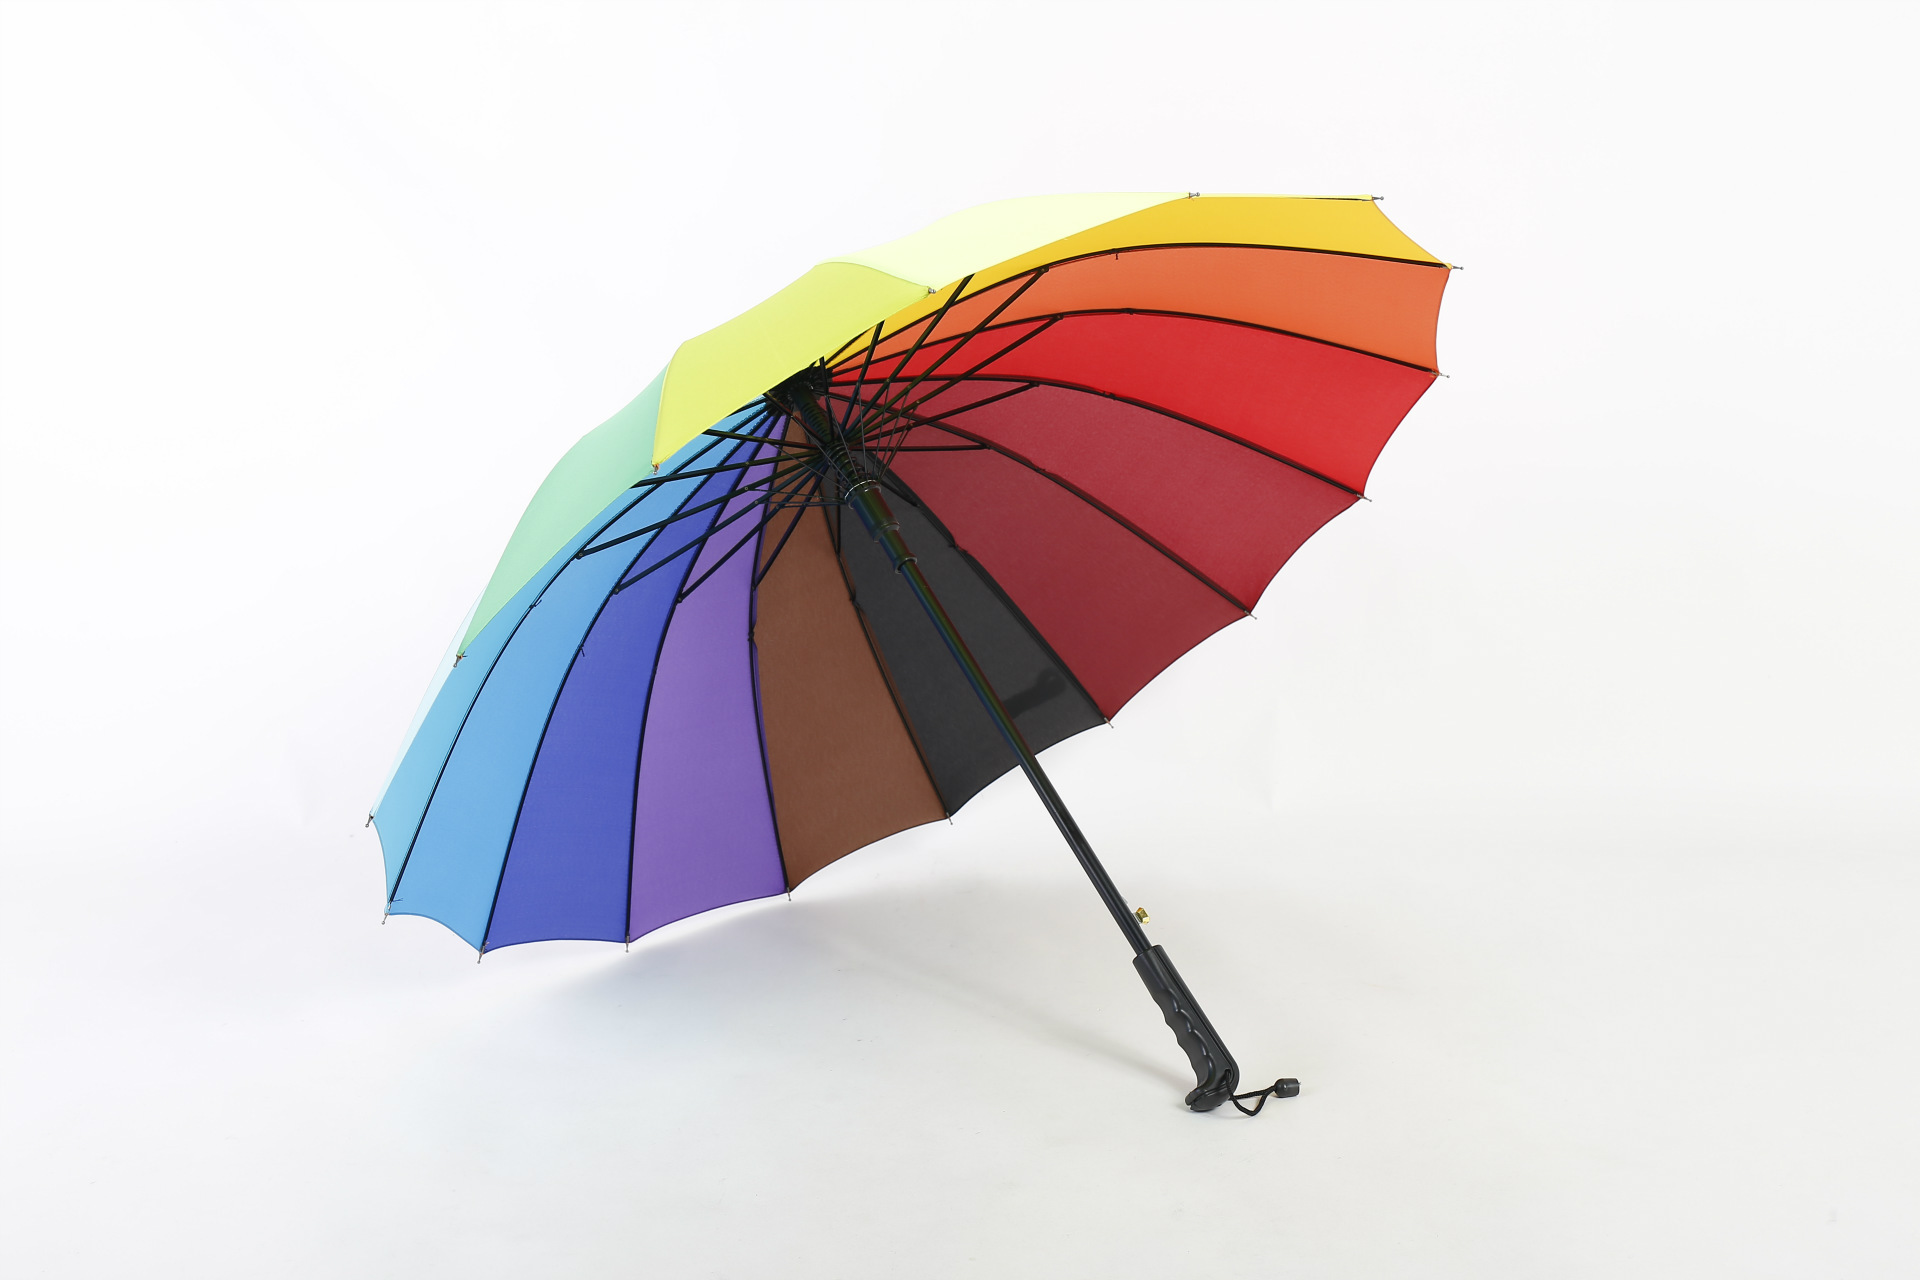 图片素材 : 户外, 阳光, 花, 线, 红, 雨伞, 颜色, 灯光, 圈, 中国伞, 设计, 对称, 形状 5760x3840 - - 21063 - 素材中国, 高清壁纸 - PxHere摄影图库